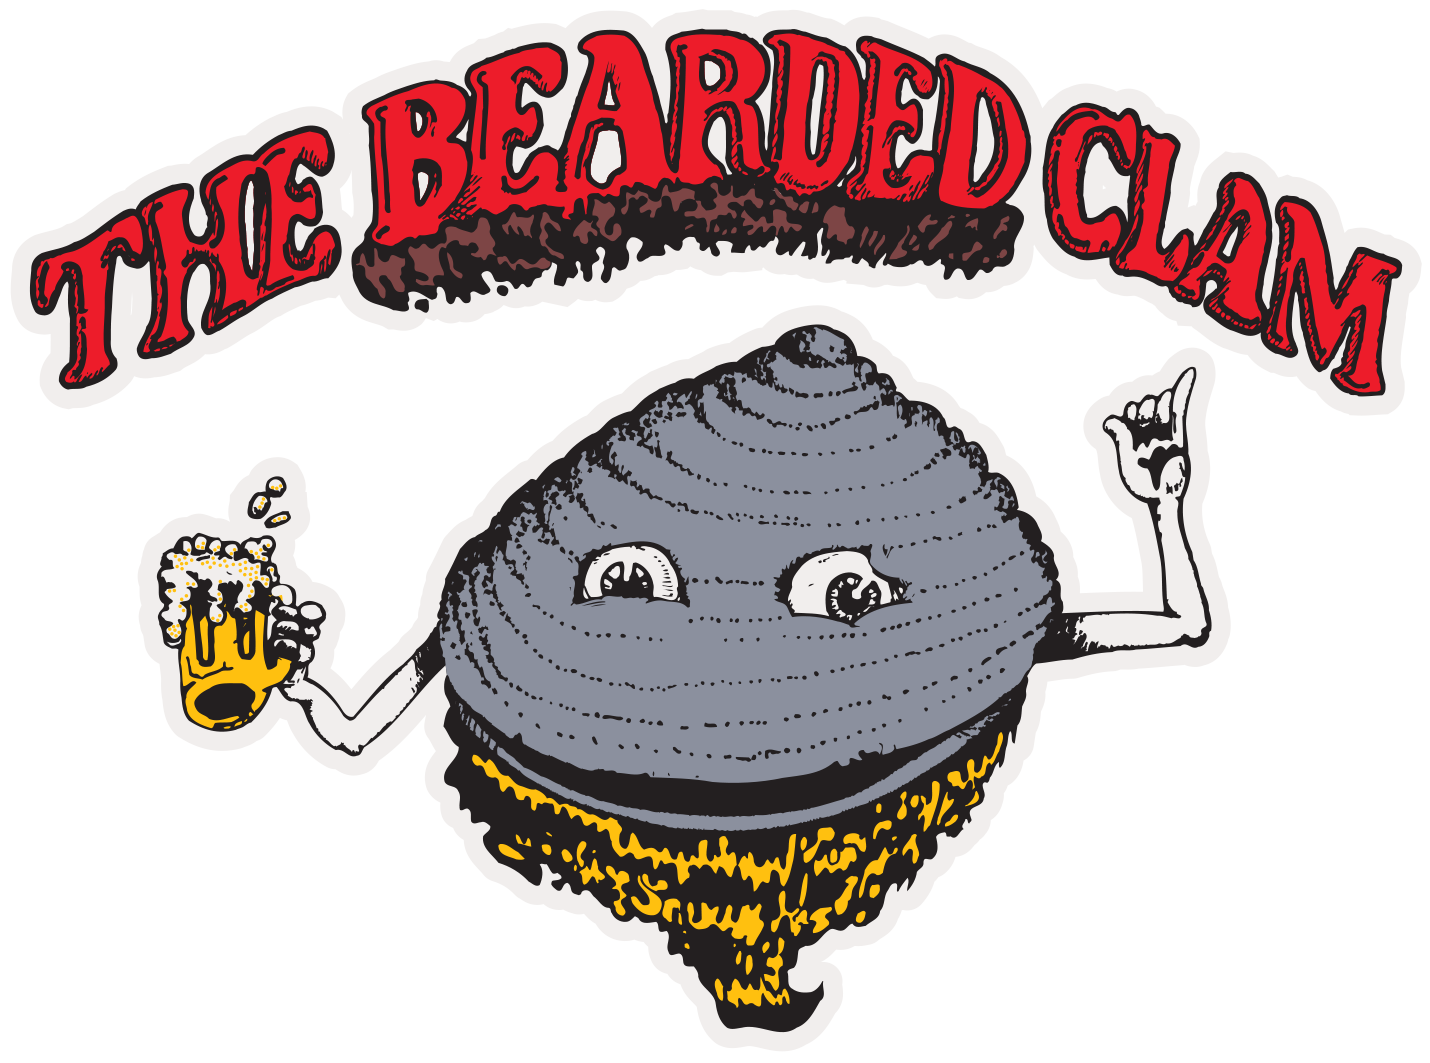 Bearded Clam